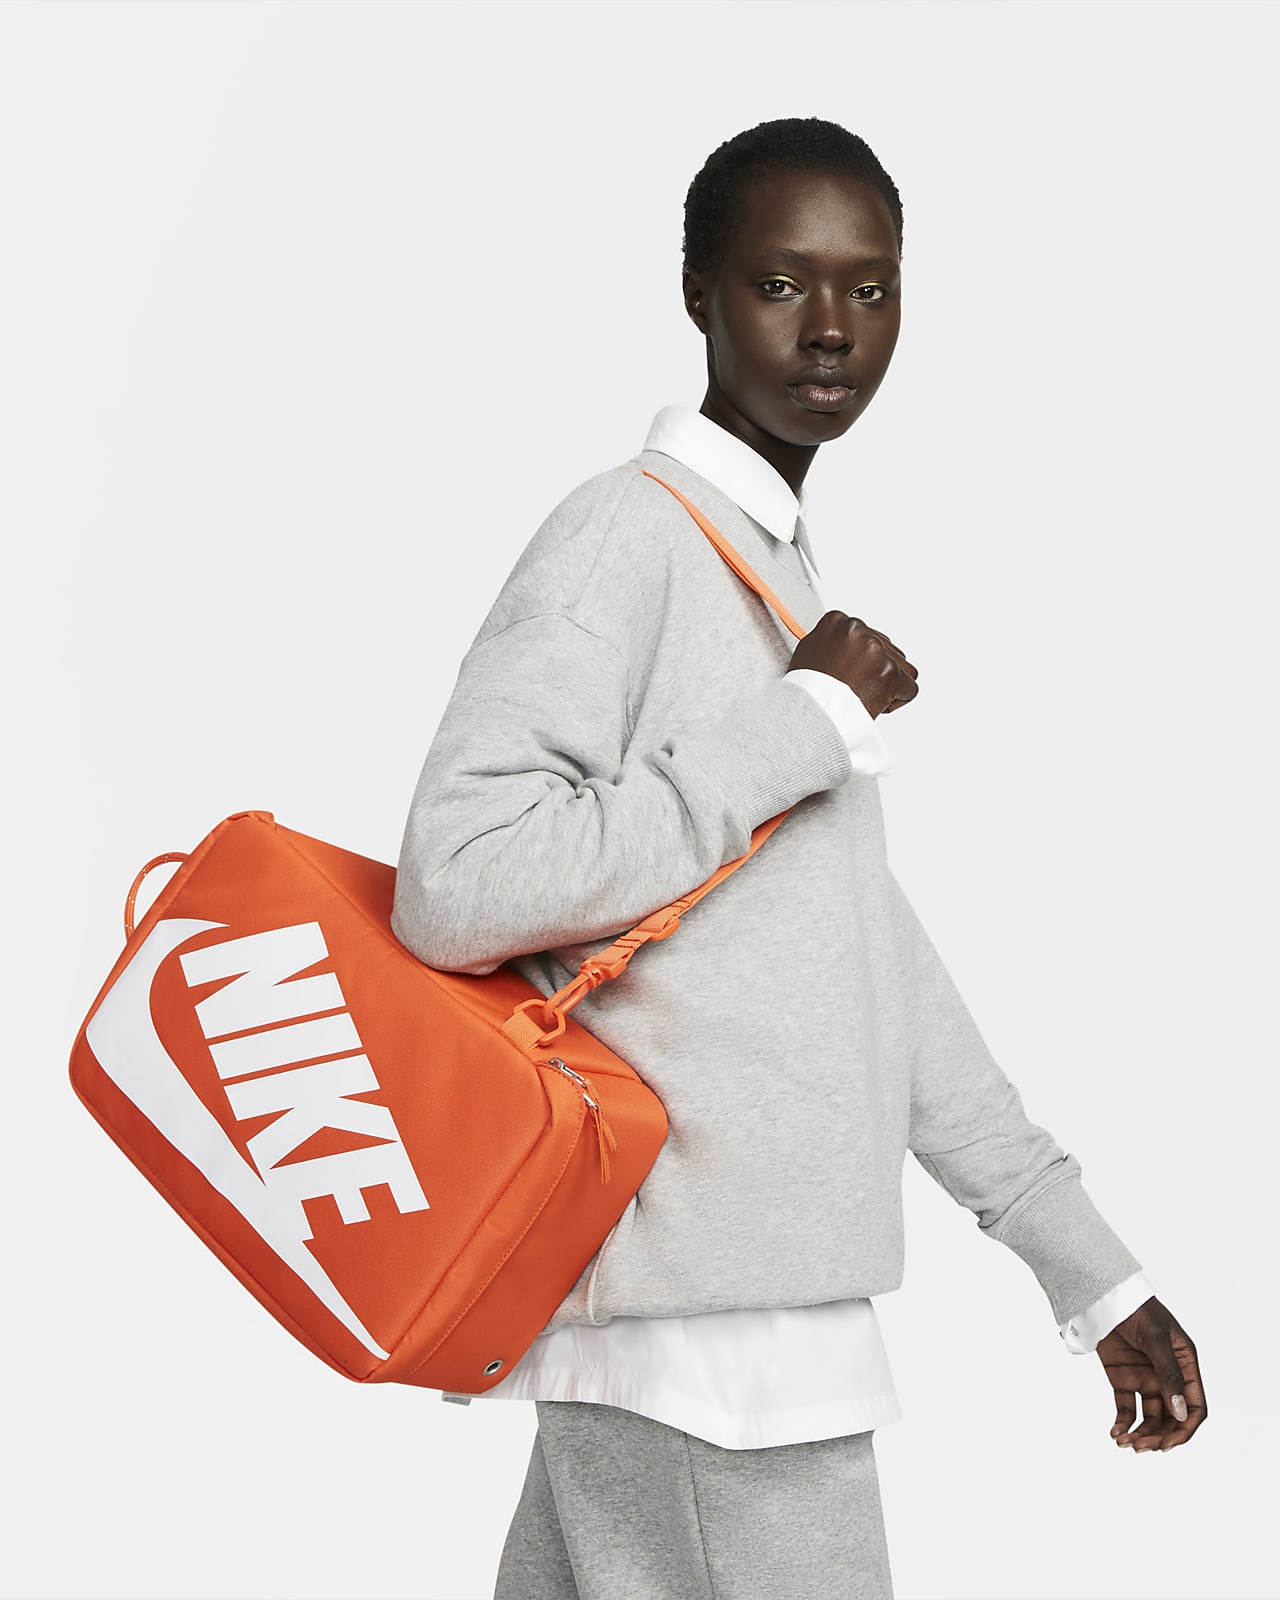 Bolsas deportivas para mujer Nike